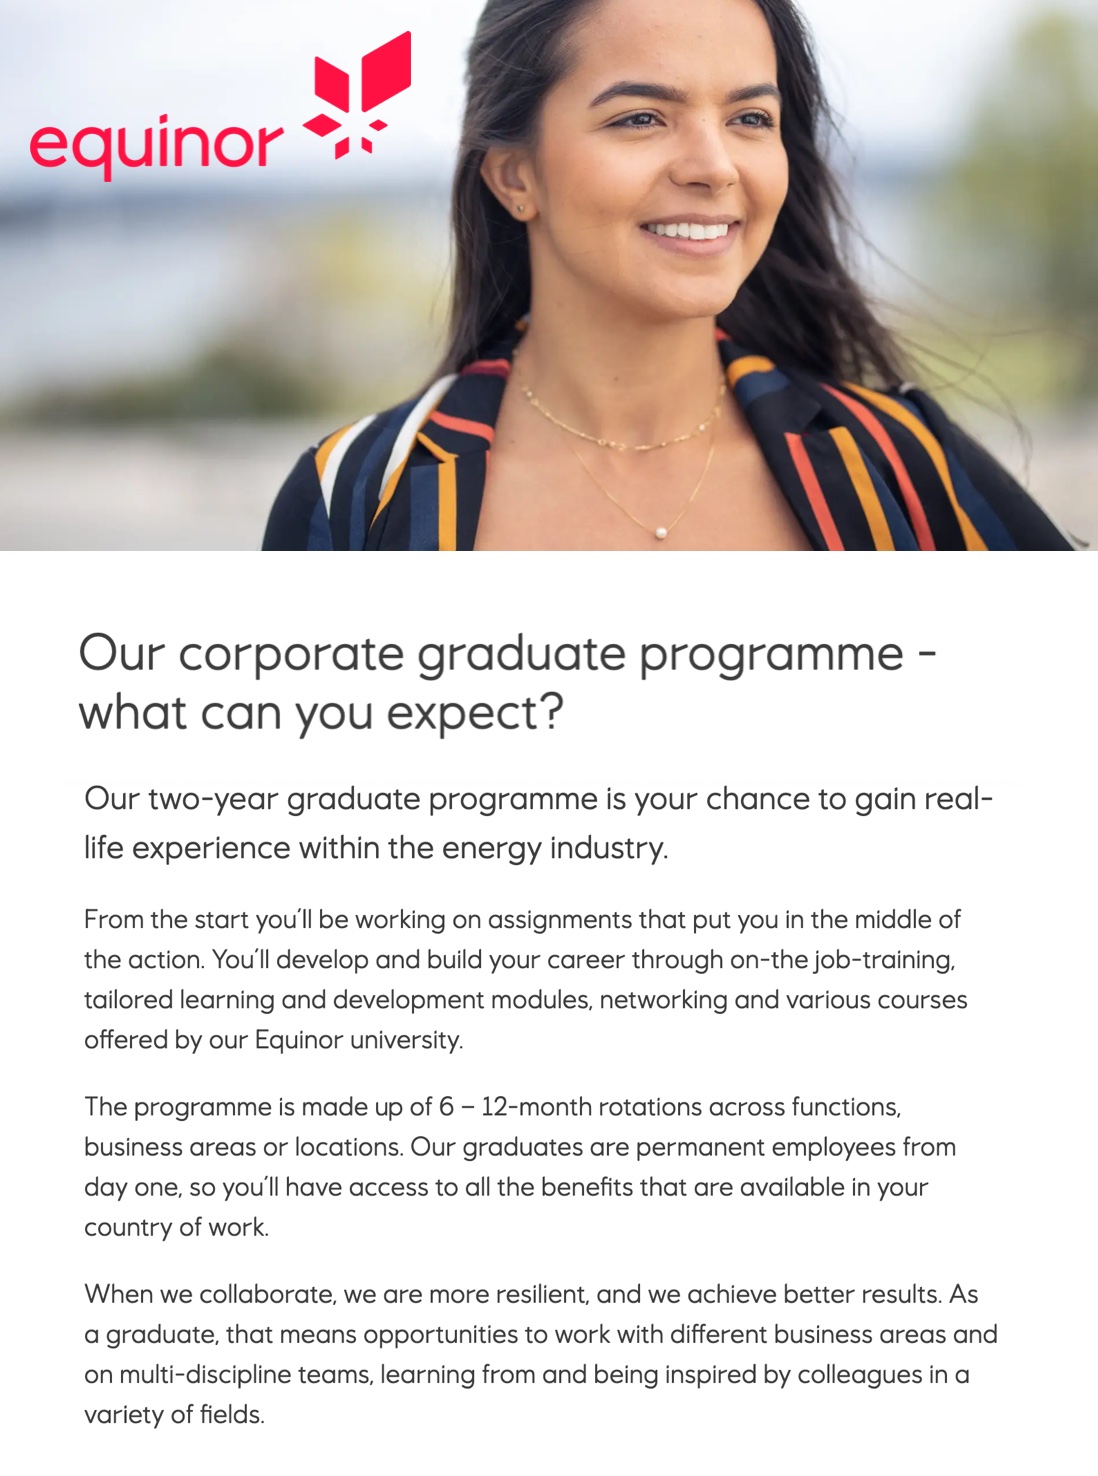 Equinor Corporate Graduate Programme